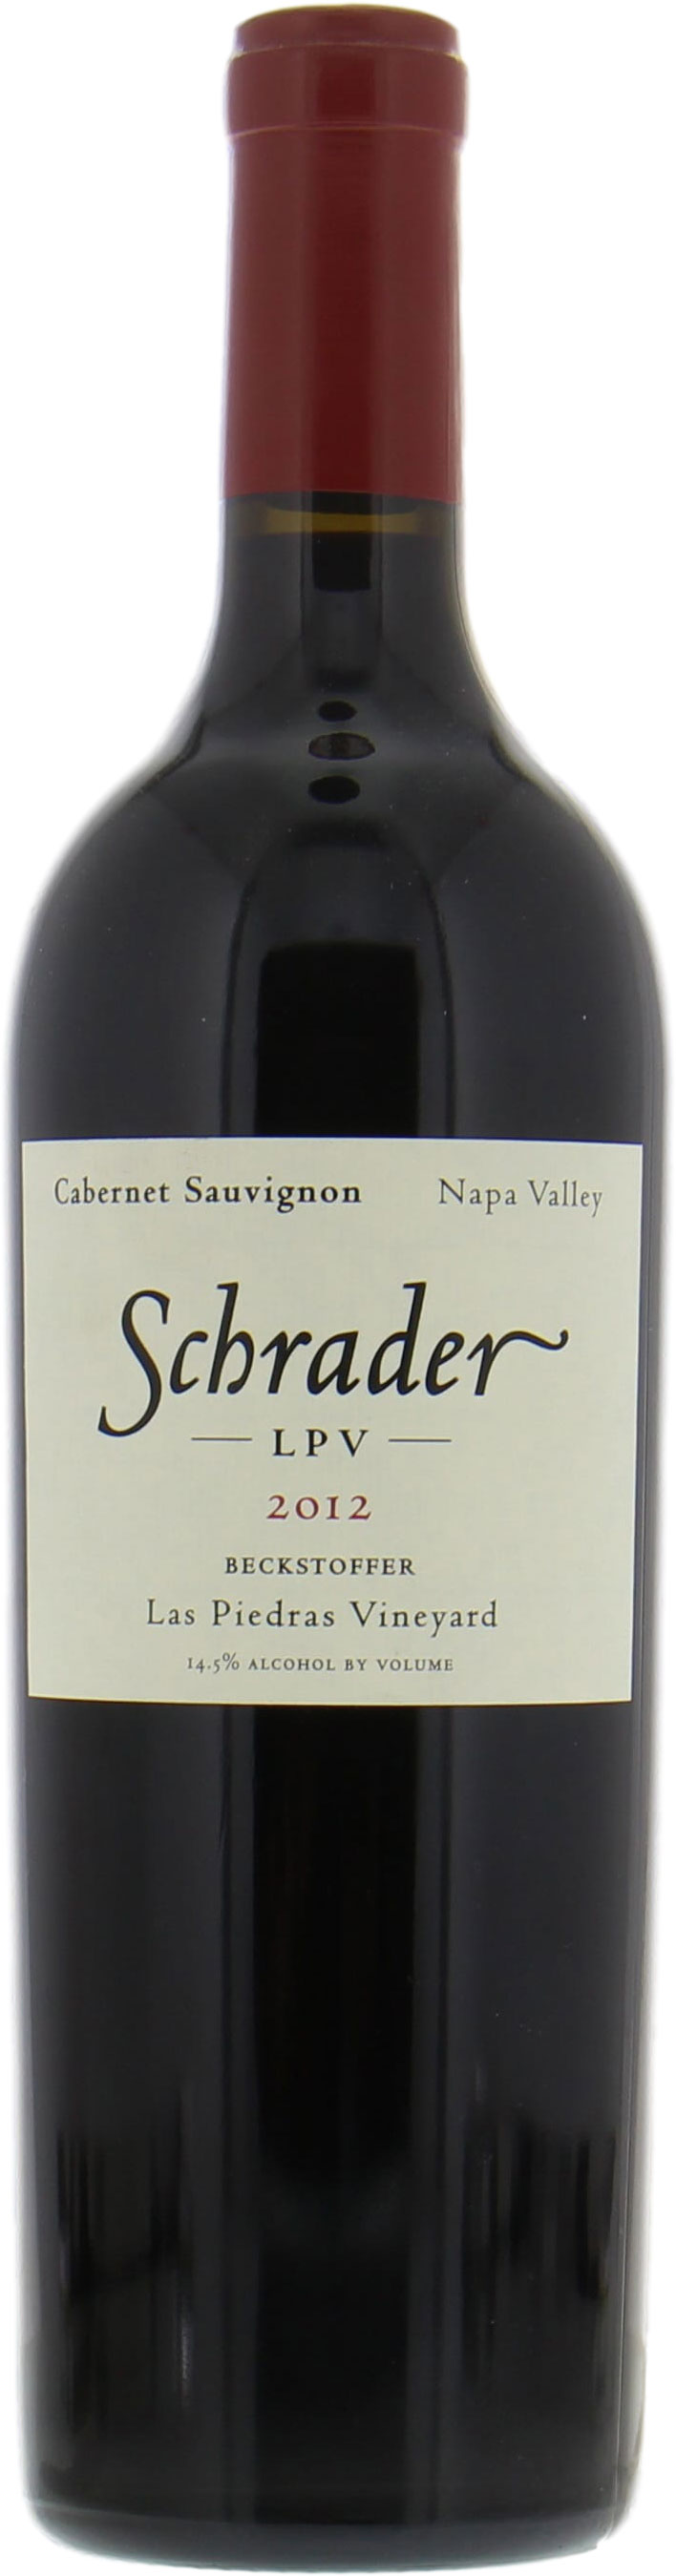 Schrader Cellars - Cabernet Sauvignon Beckstoffer Las Piedras Vineyard Lpv 2012 Perfect